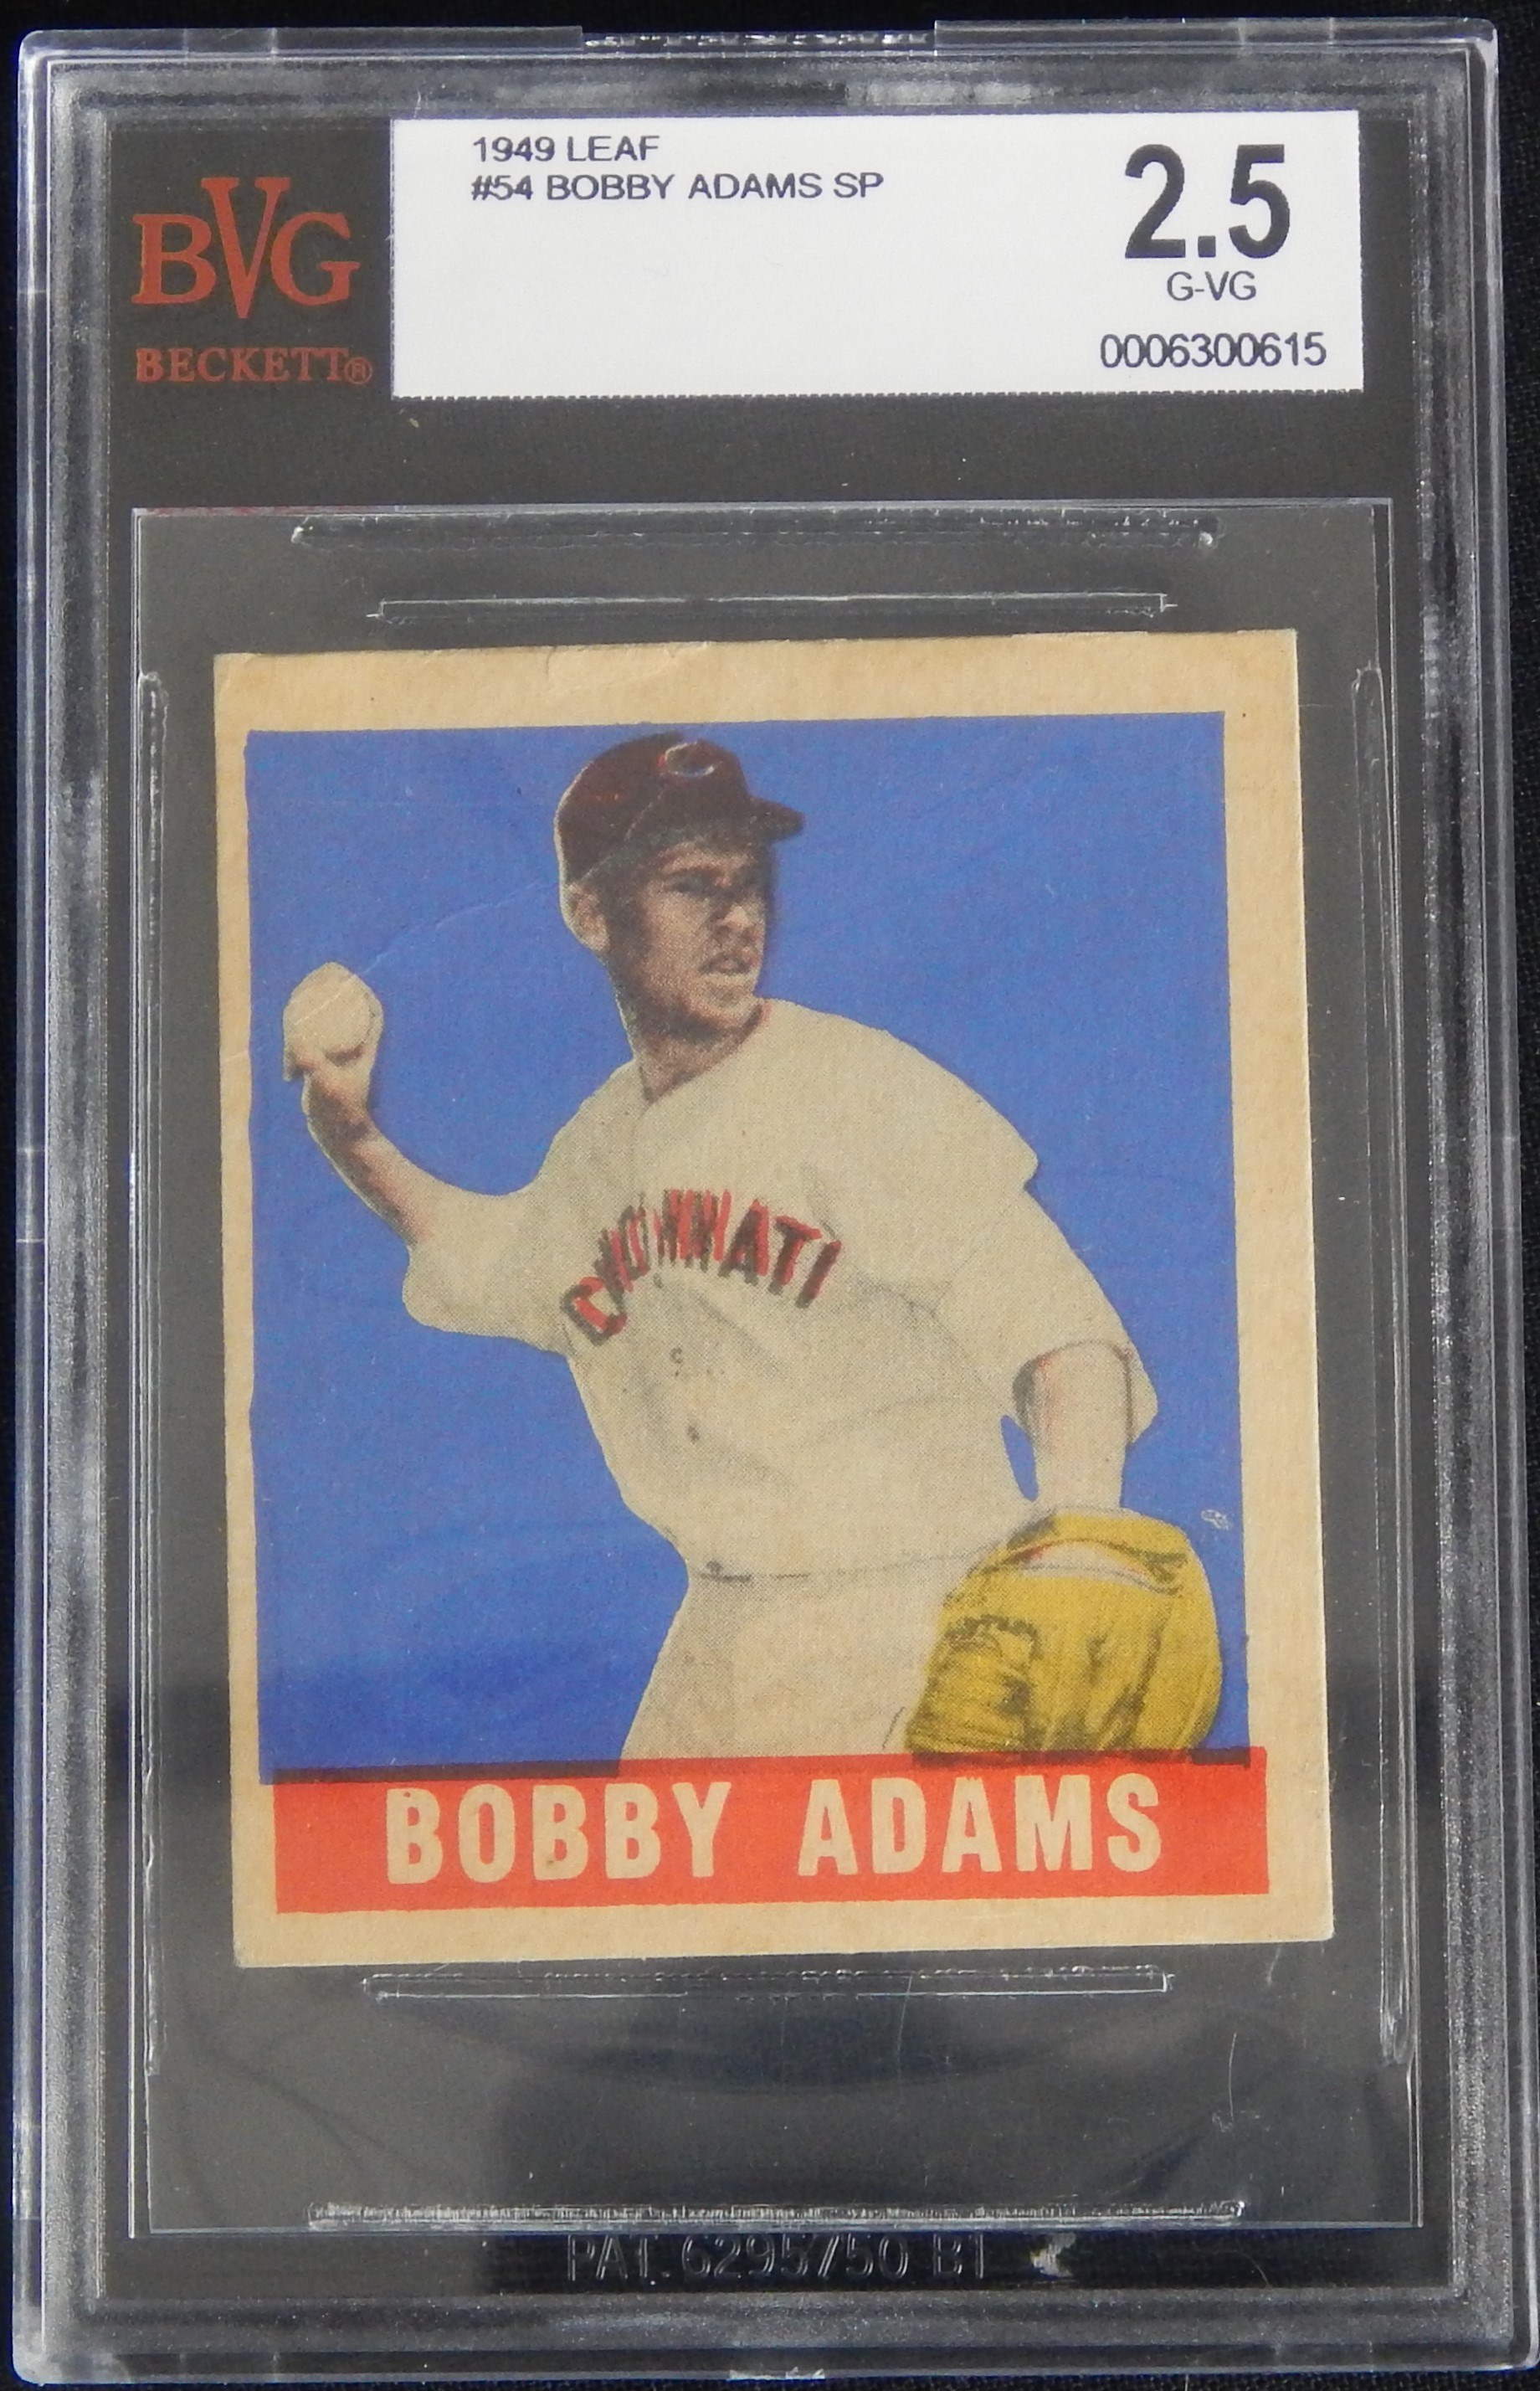 - 1948 Leaf #54 Bobby Adams SP - BVG 2.5